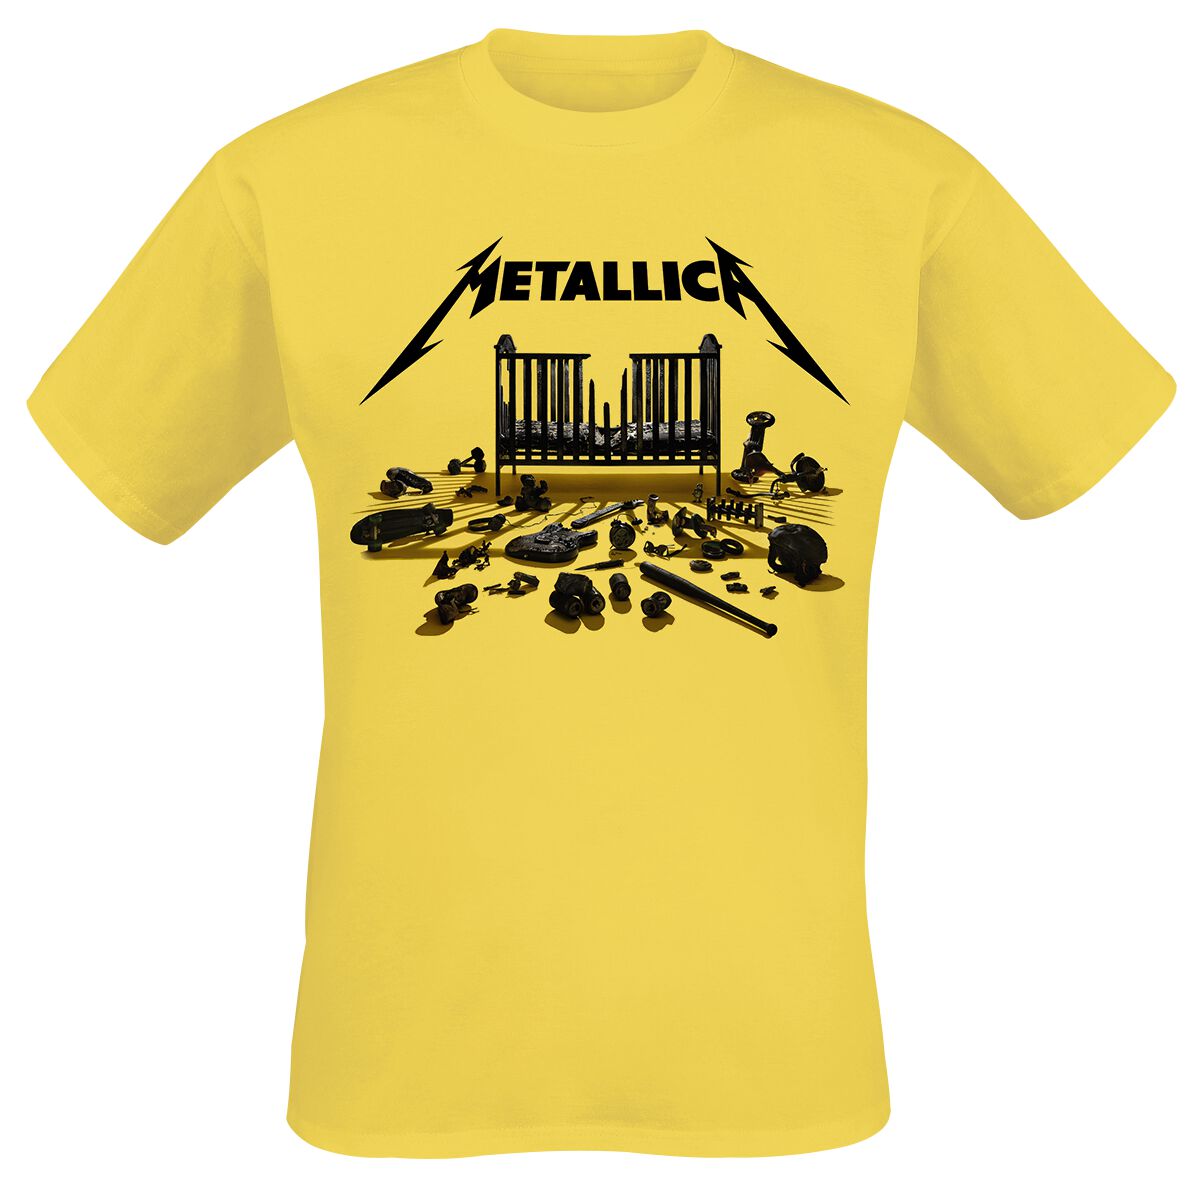 Metallica T-Shirt - Simplified Cover (M72) - S bis 3XL - für Männer - Größe S - gelb  - Lizenziertes Merchandise!